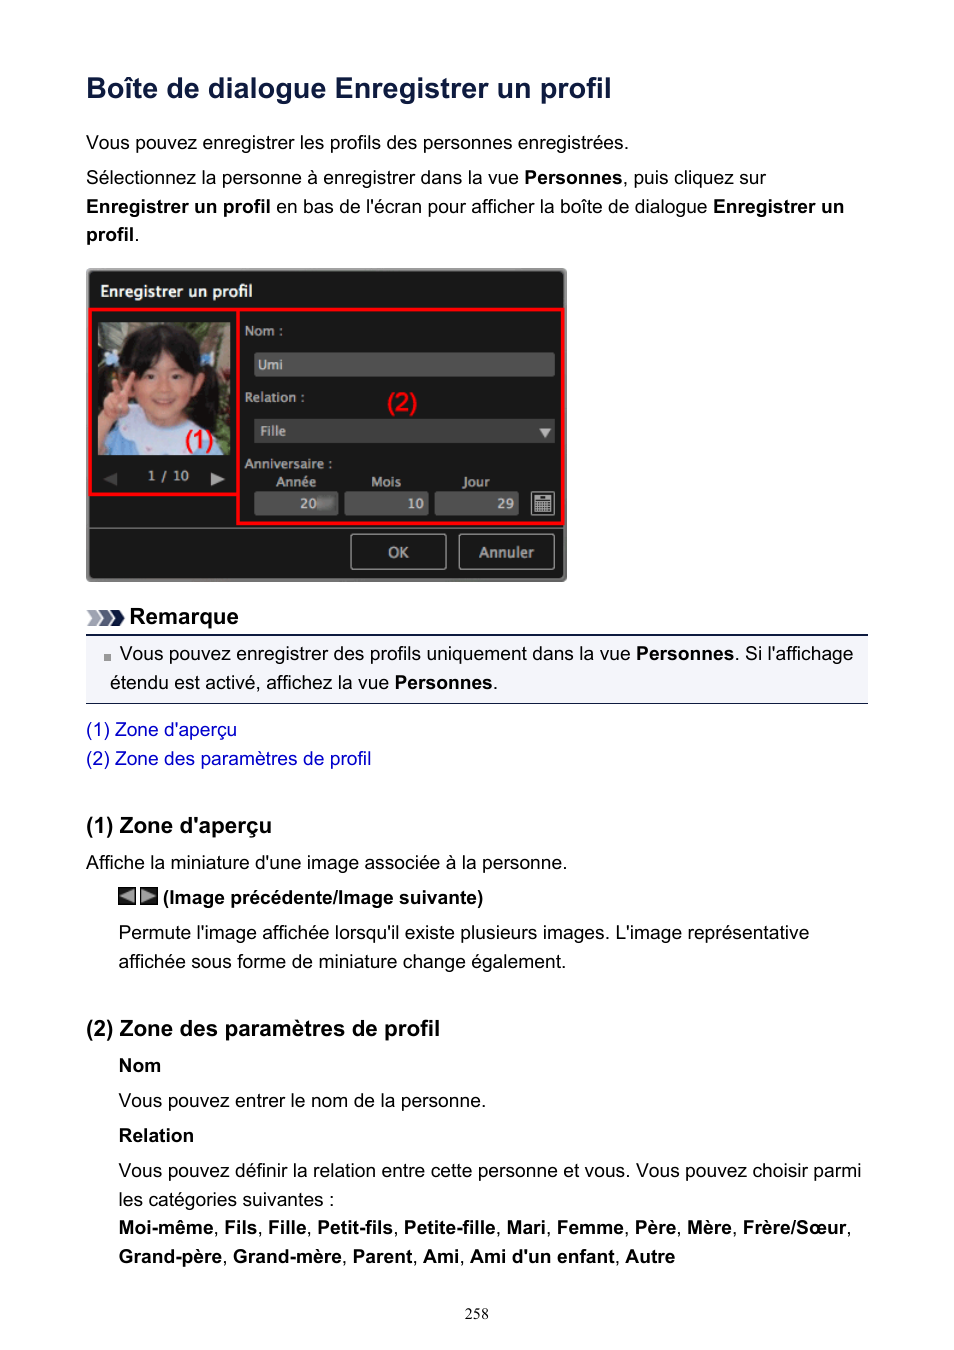 Boîte de dialogue enregistrer un profil, Affiche la | Canon PIXMA iP100 avec batterie Manuel d'utilisation | Page 258 / 347